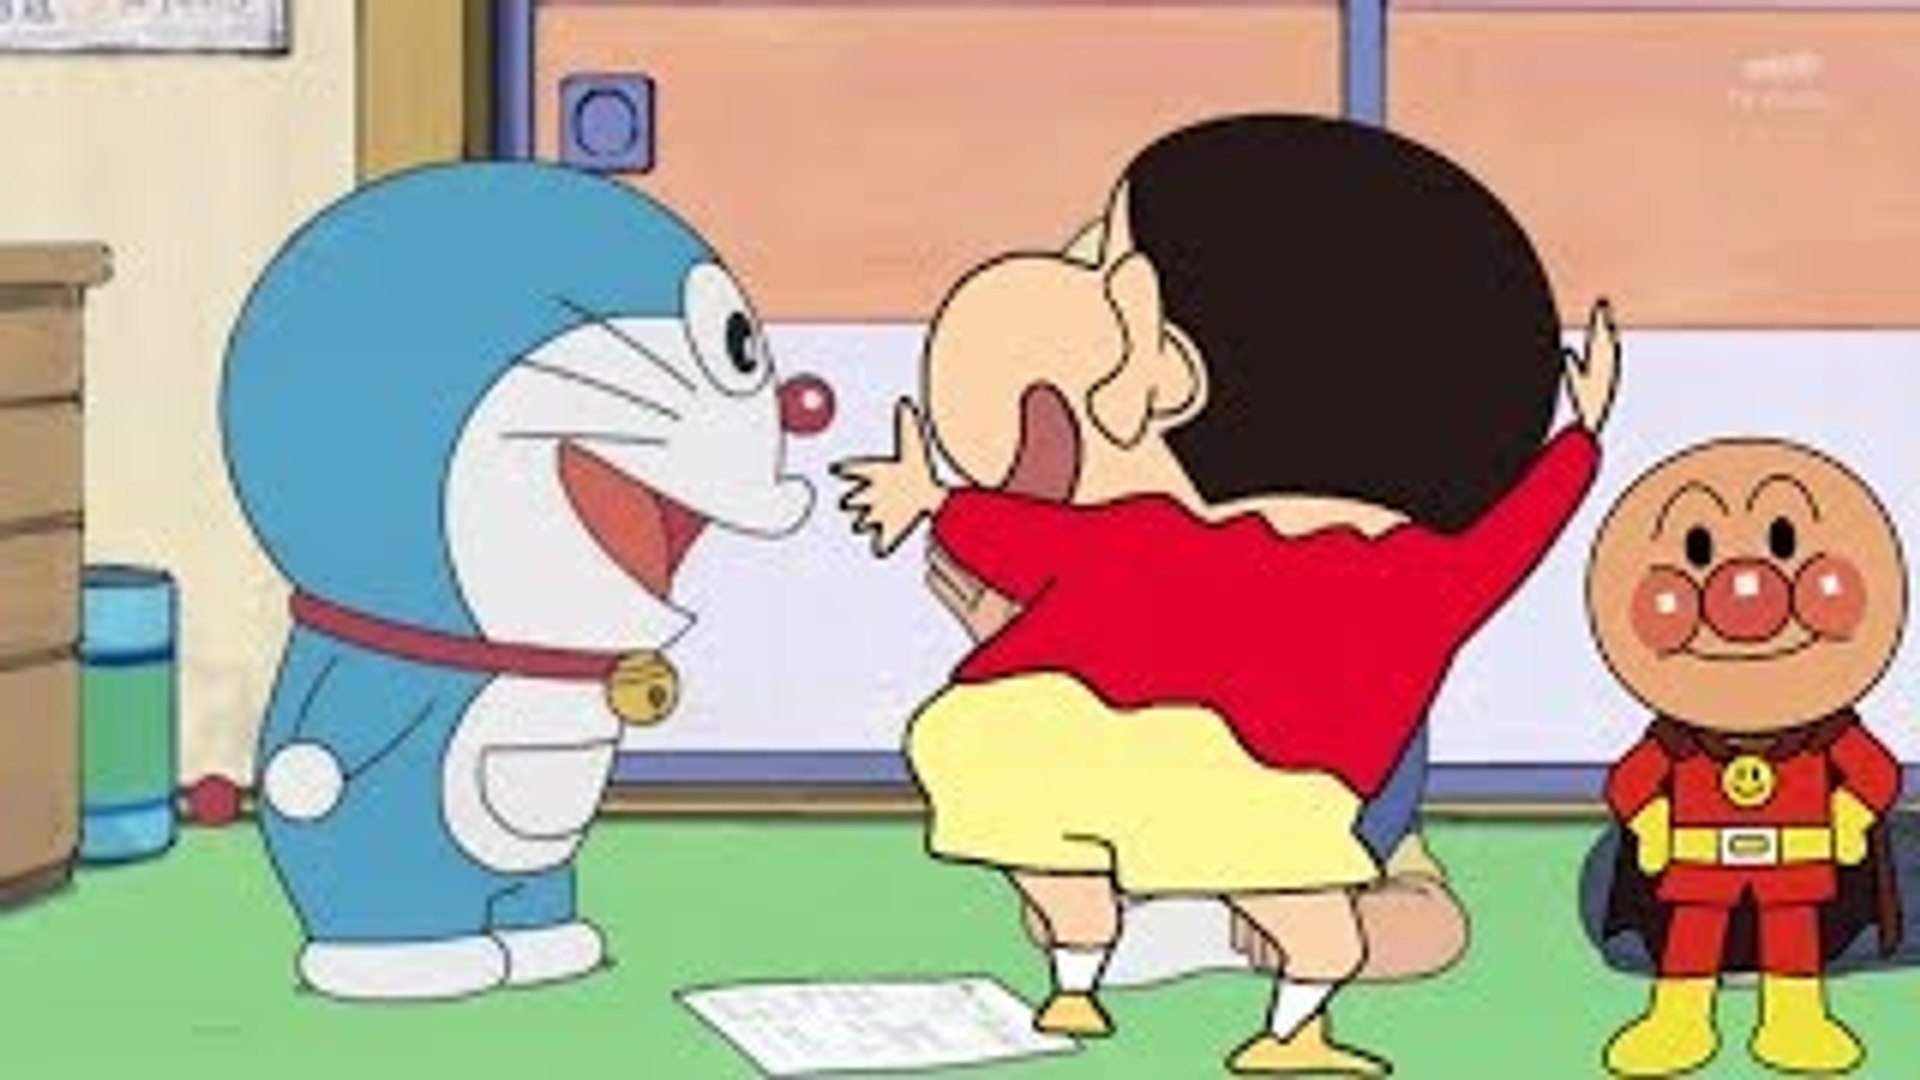 クレヨンしんちゃん アニメ ドラえもん アニメ vol 10 歌のアニメーション こども向けの歌 だだんだん ばいきんまん ナガネギマン 赤ちゃん泣き止む anpanman